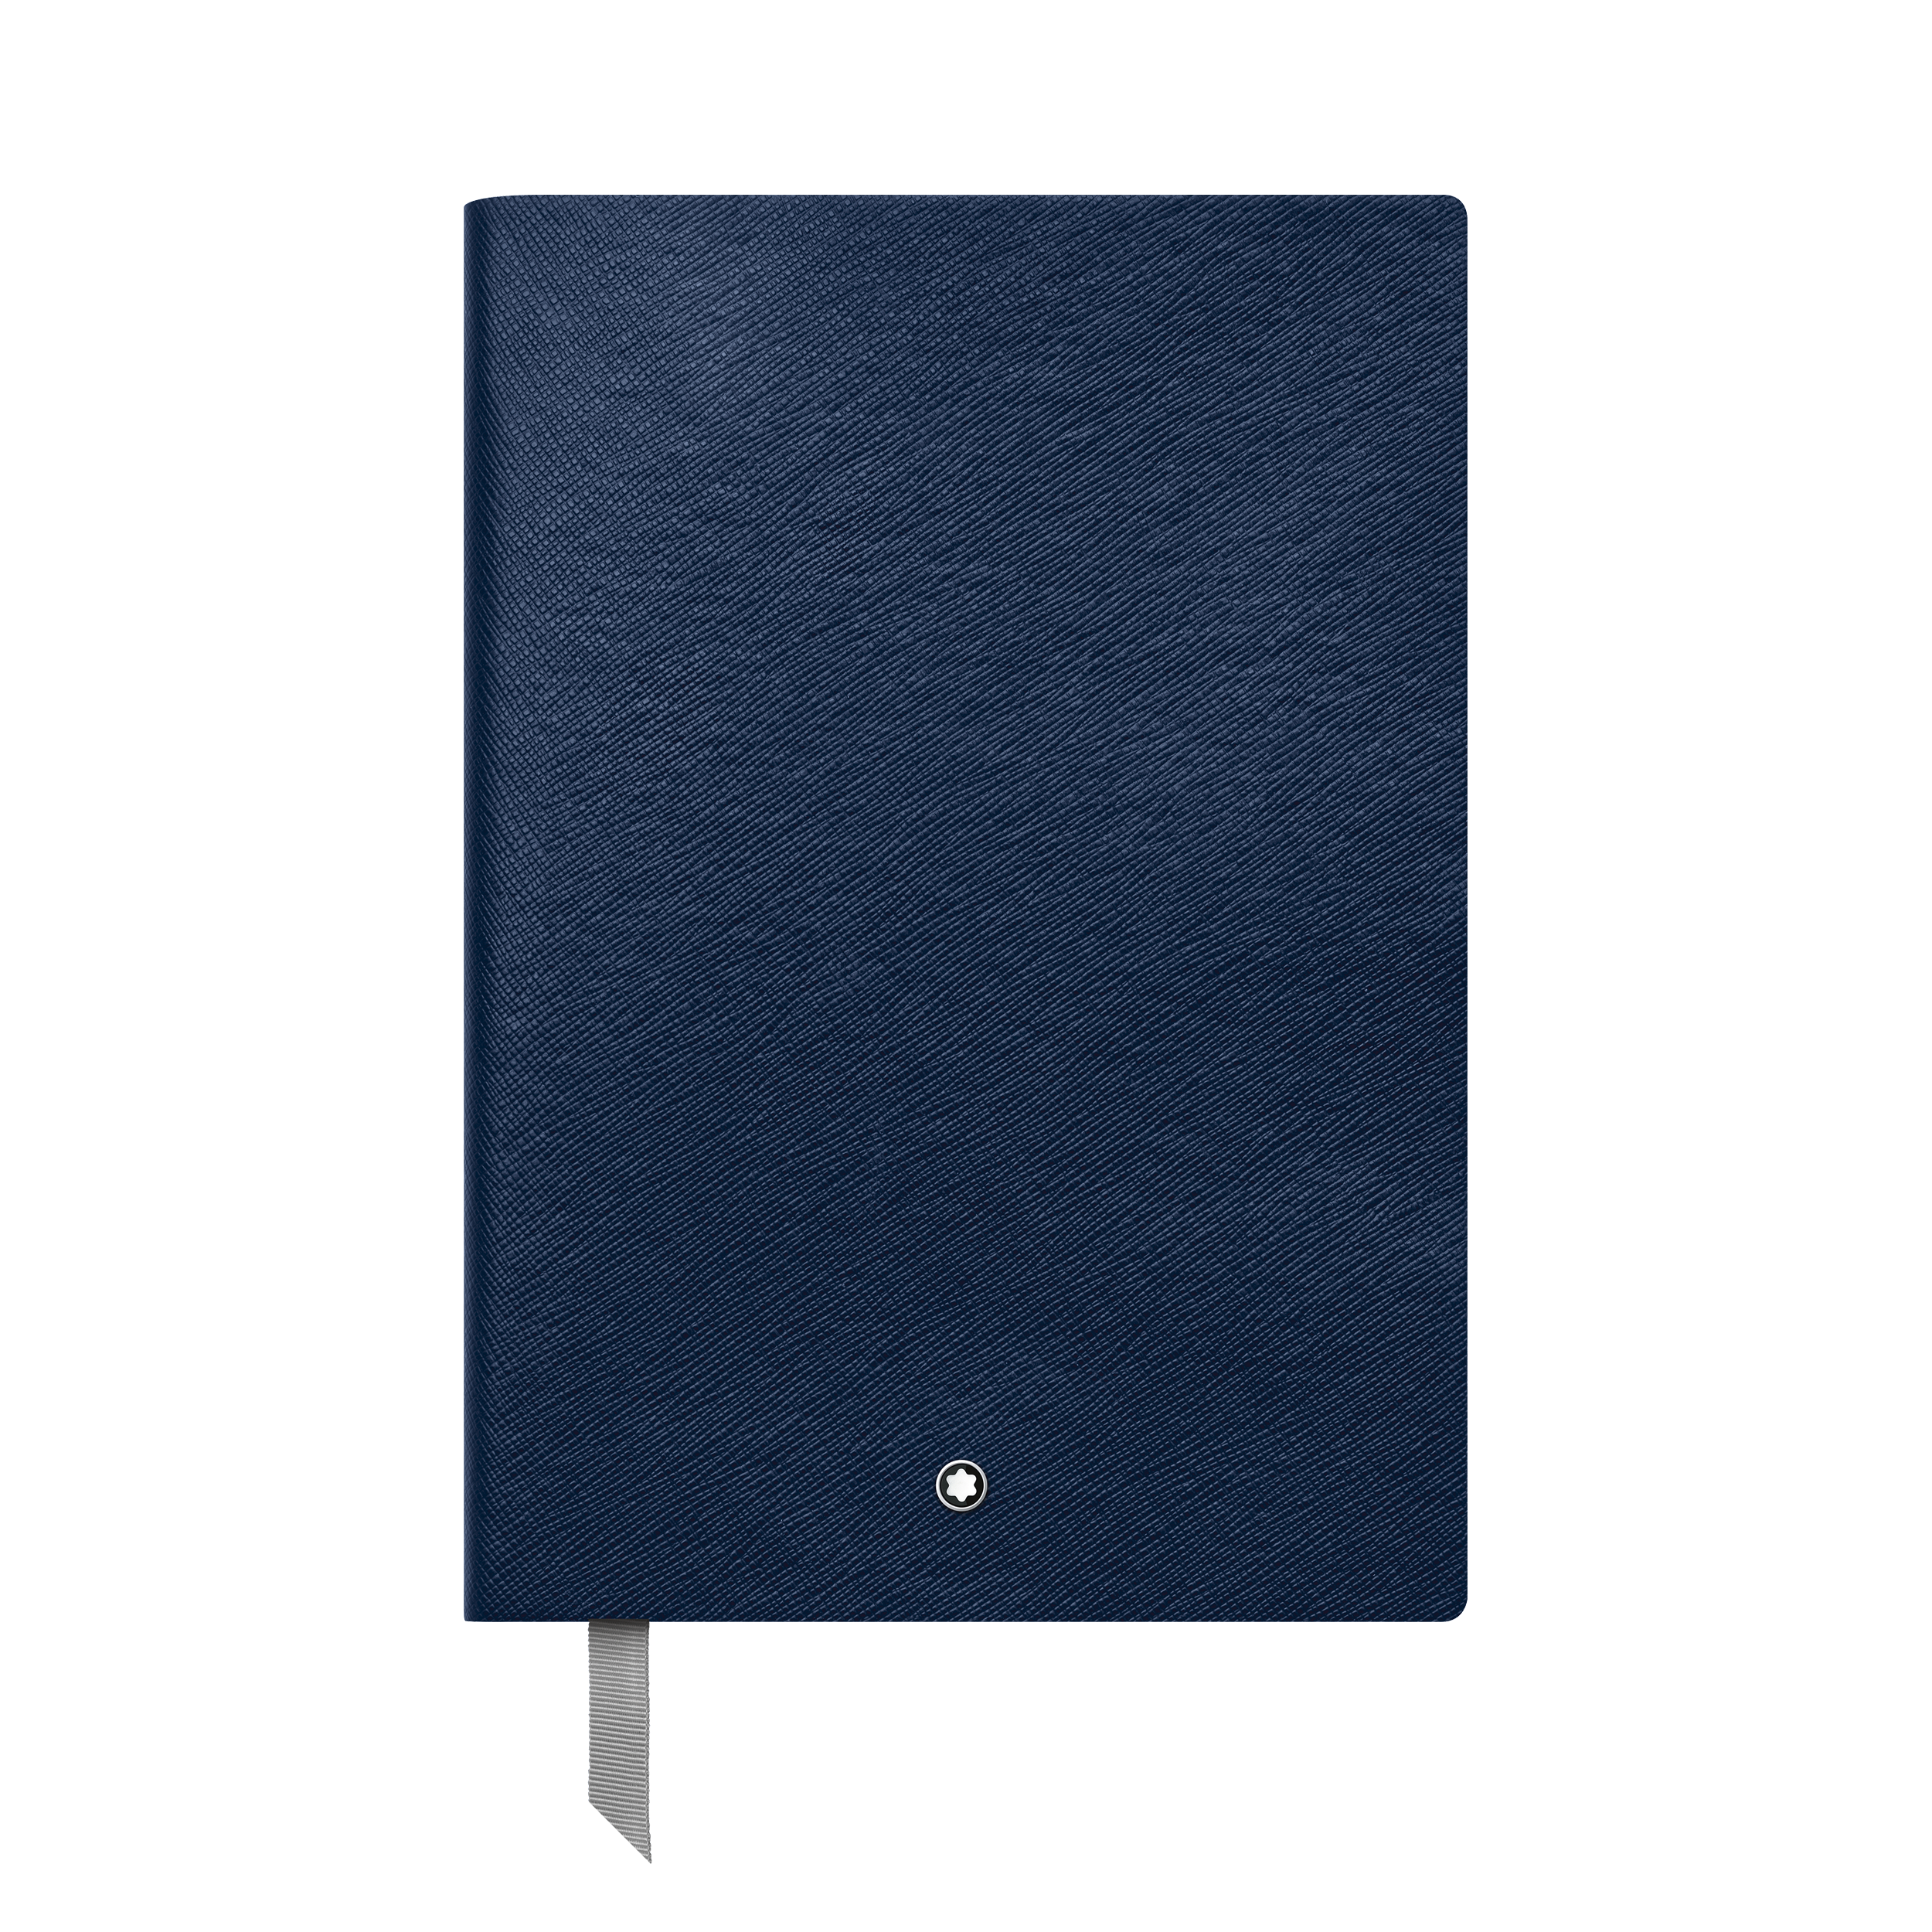 Montblanc Fine Stationery Notebook #146 Indigo, lined, image 1